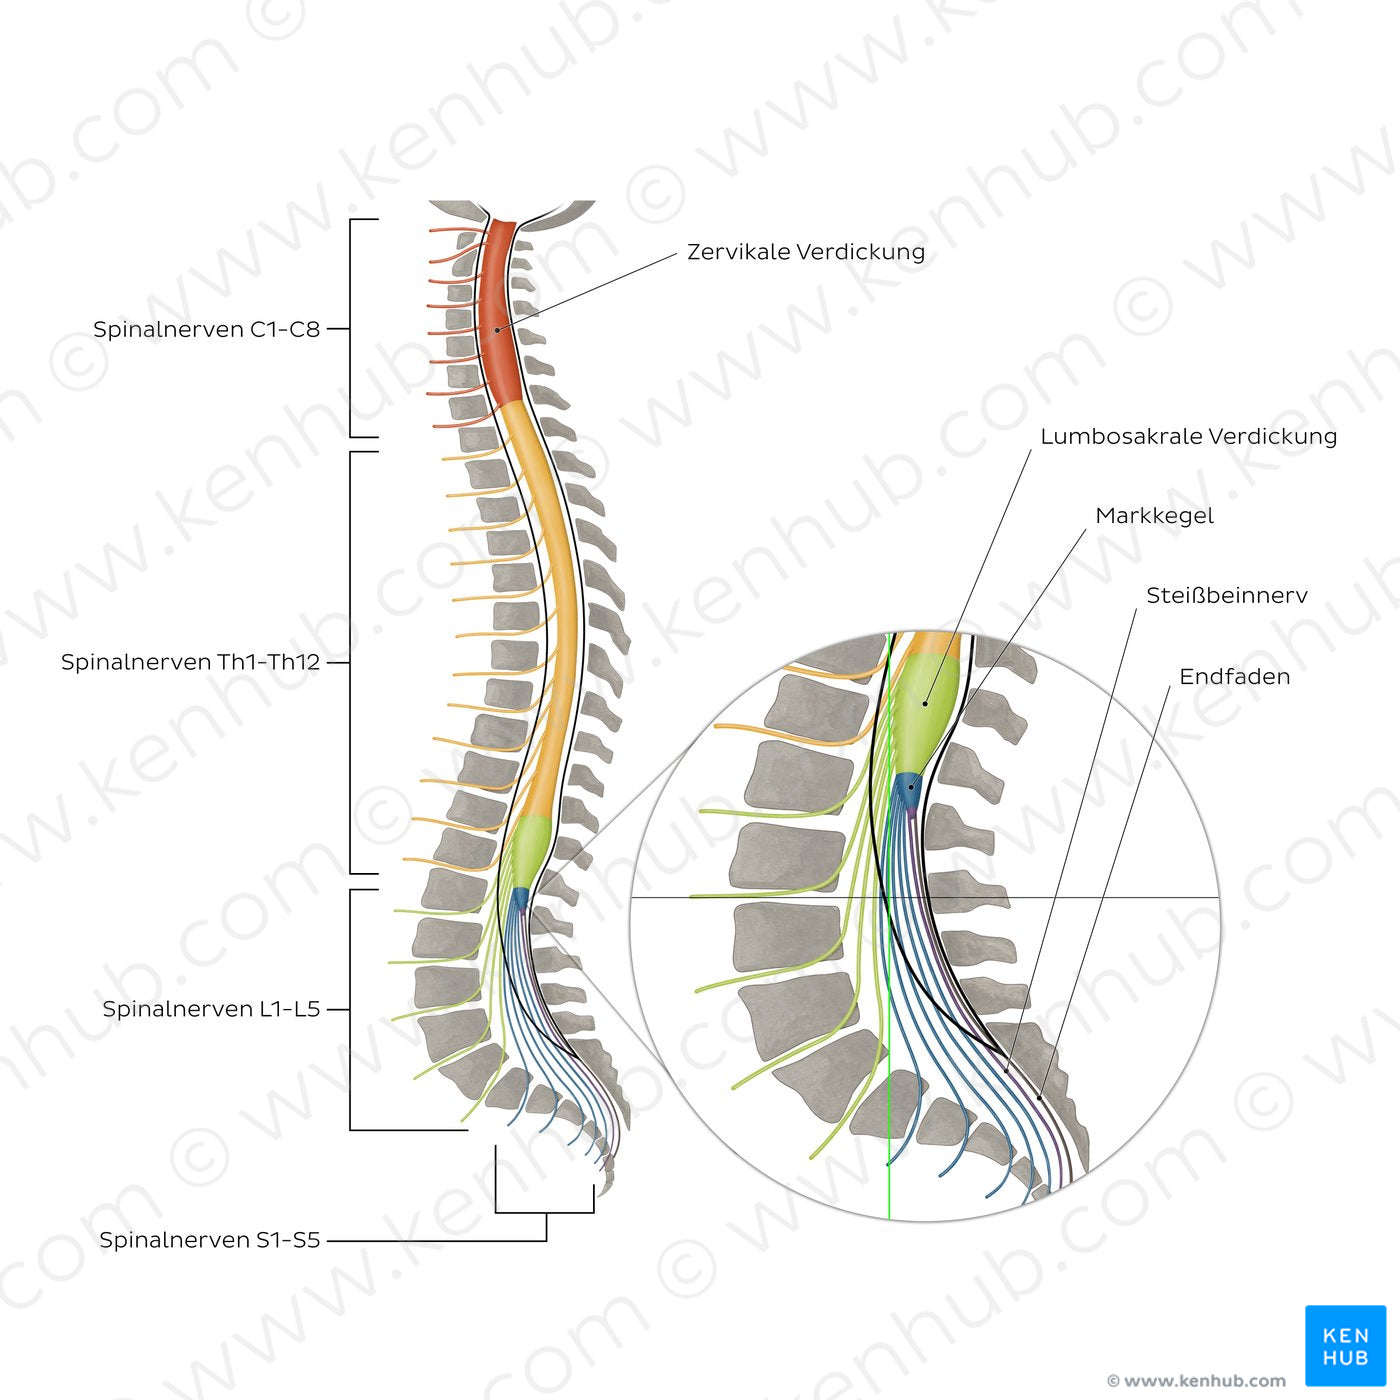 Vertebral column and spinal nerves (German)